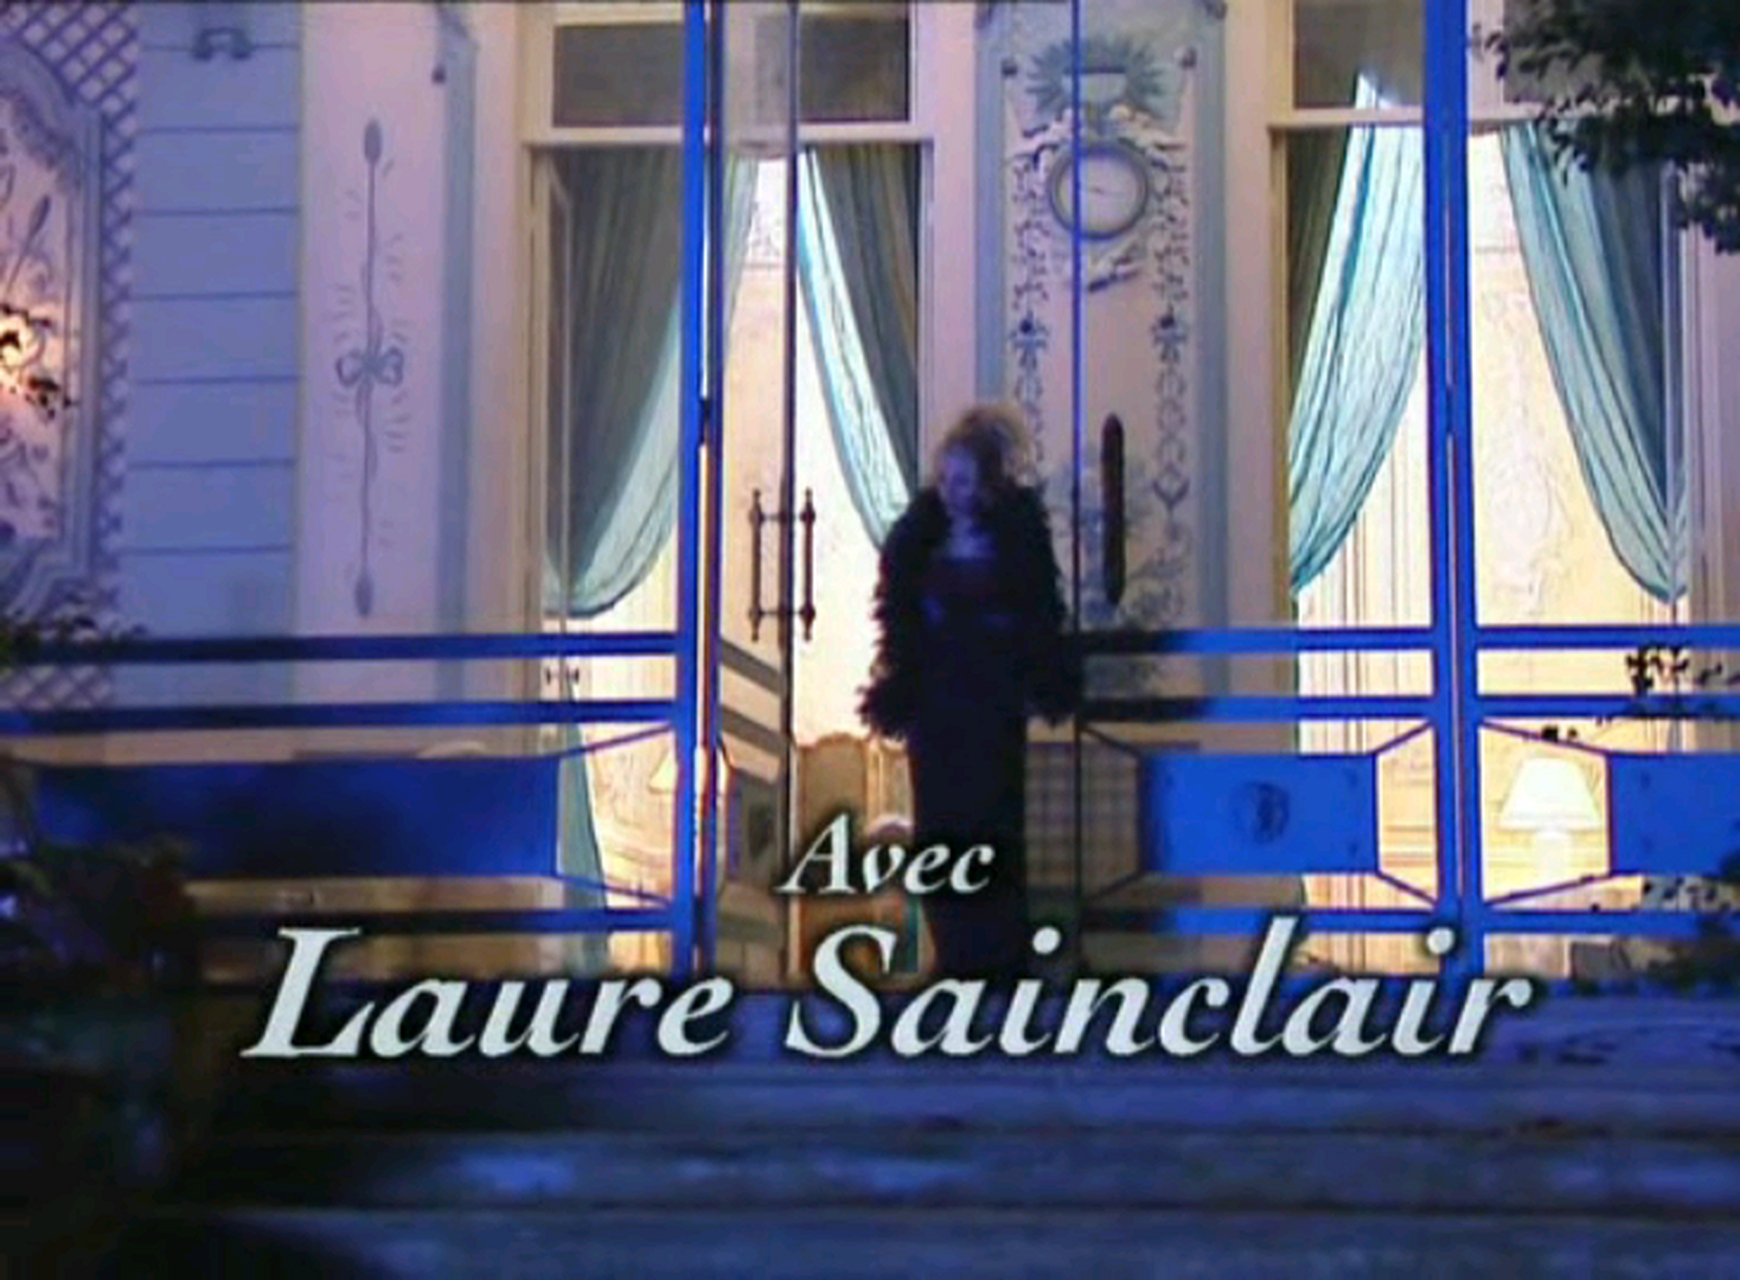 法国啄木鸟电影,经典中的经典,女神罗丽星克莱尔领衔主演,太美了